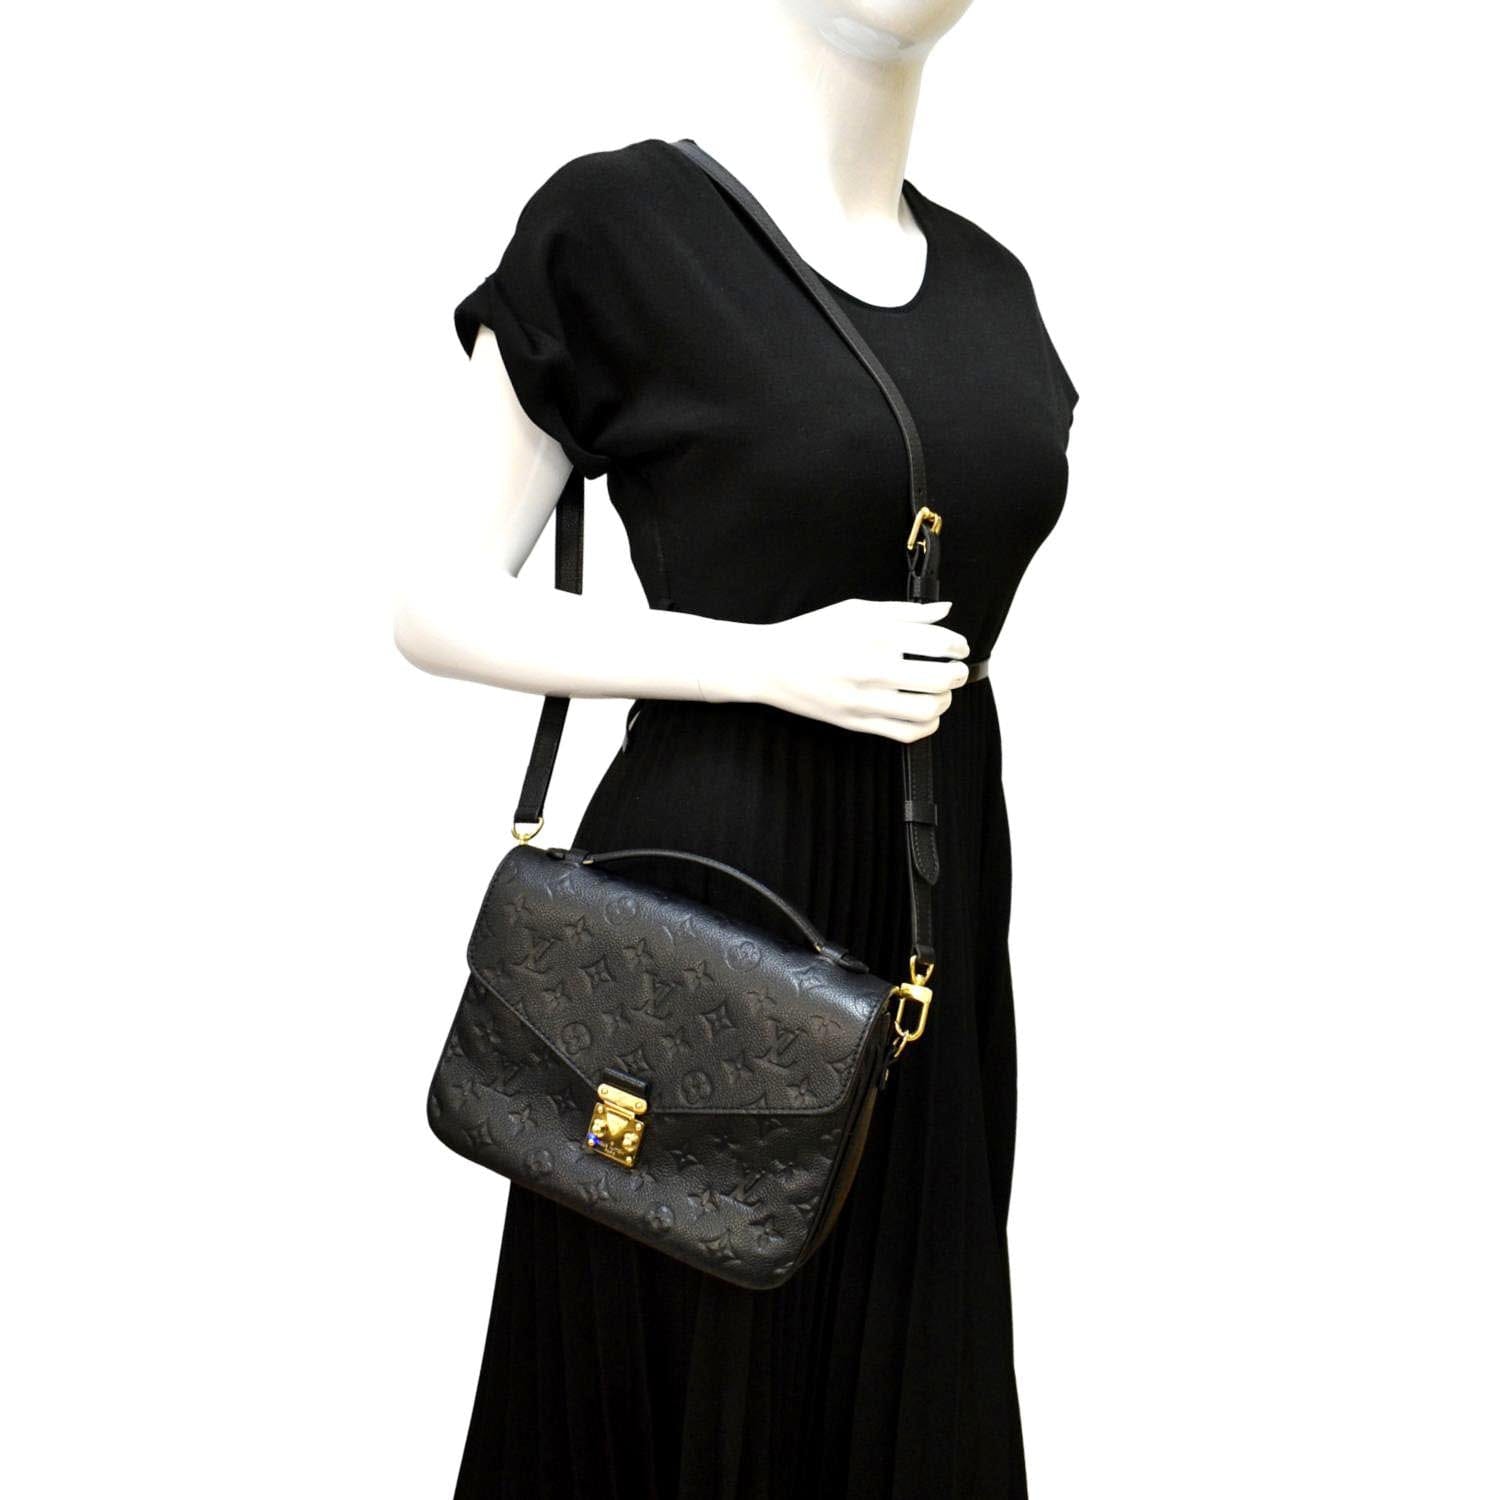 Louis Vuitton Black Pochette Metis in Monogram Empreinte Leather